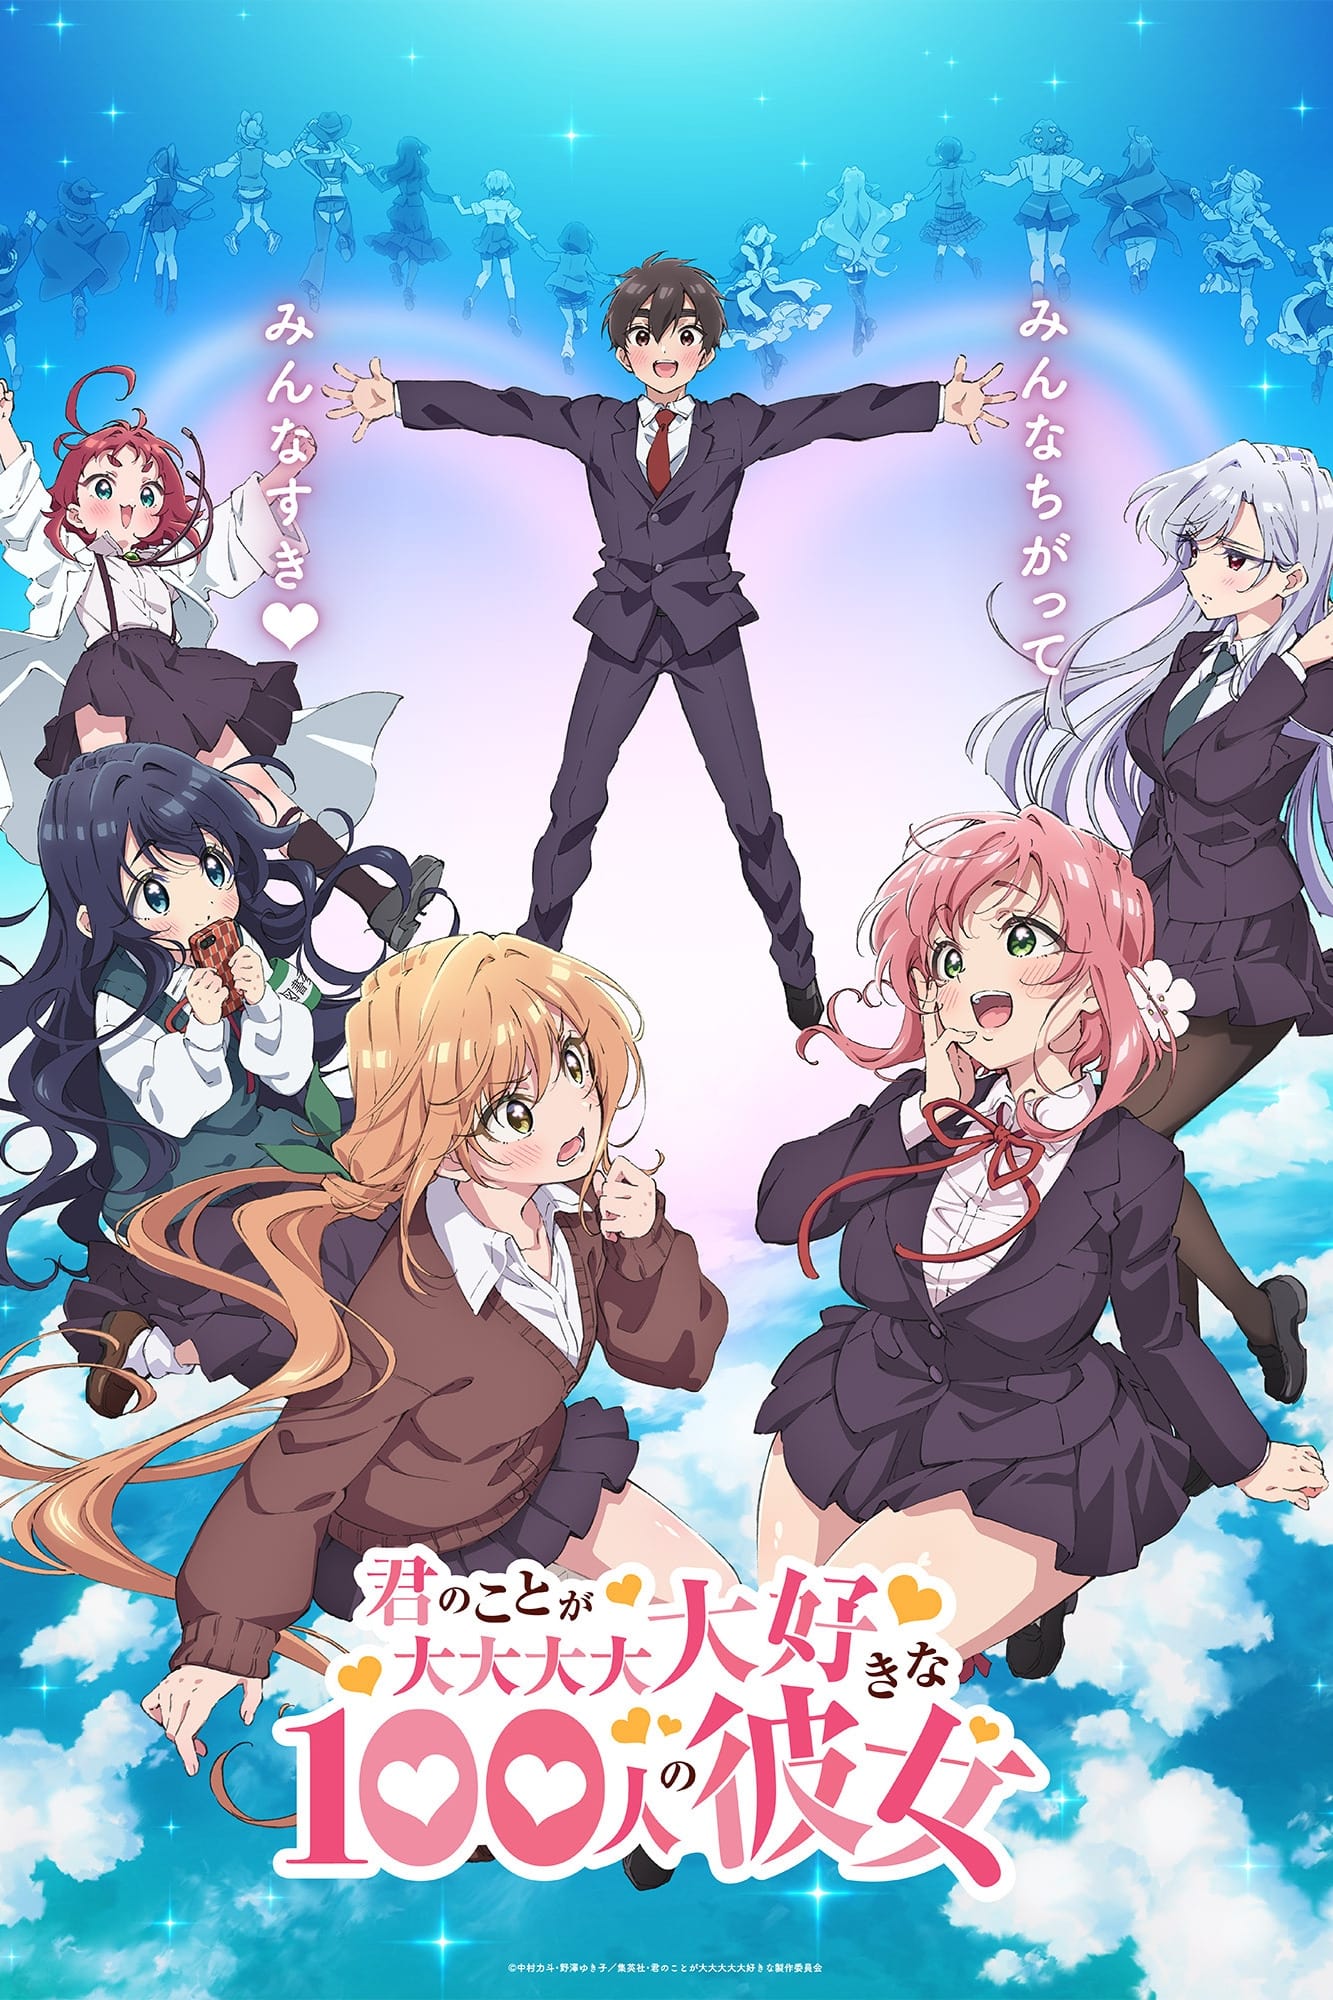 Assistir Kaizoku Oujo Todos os Episódios Legendado (HD) - Meus Animes Online